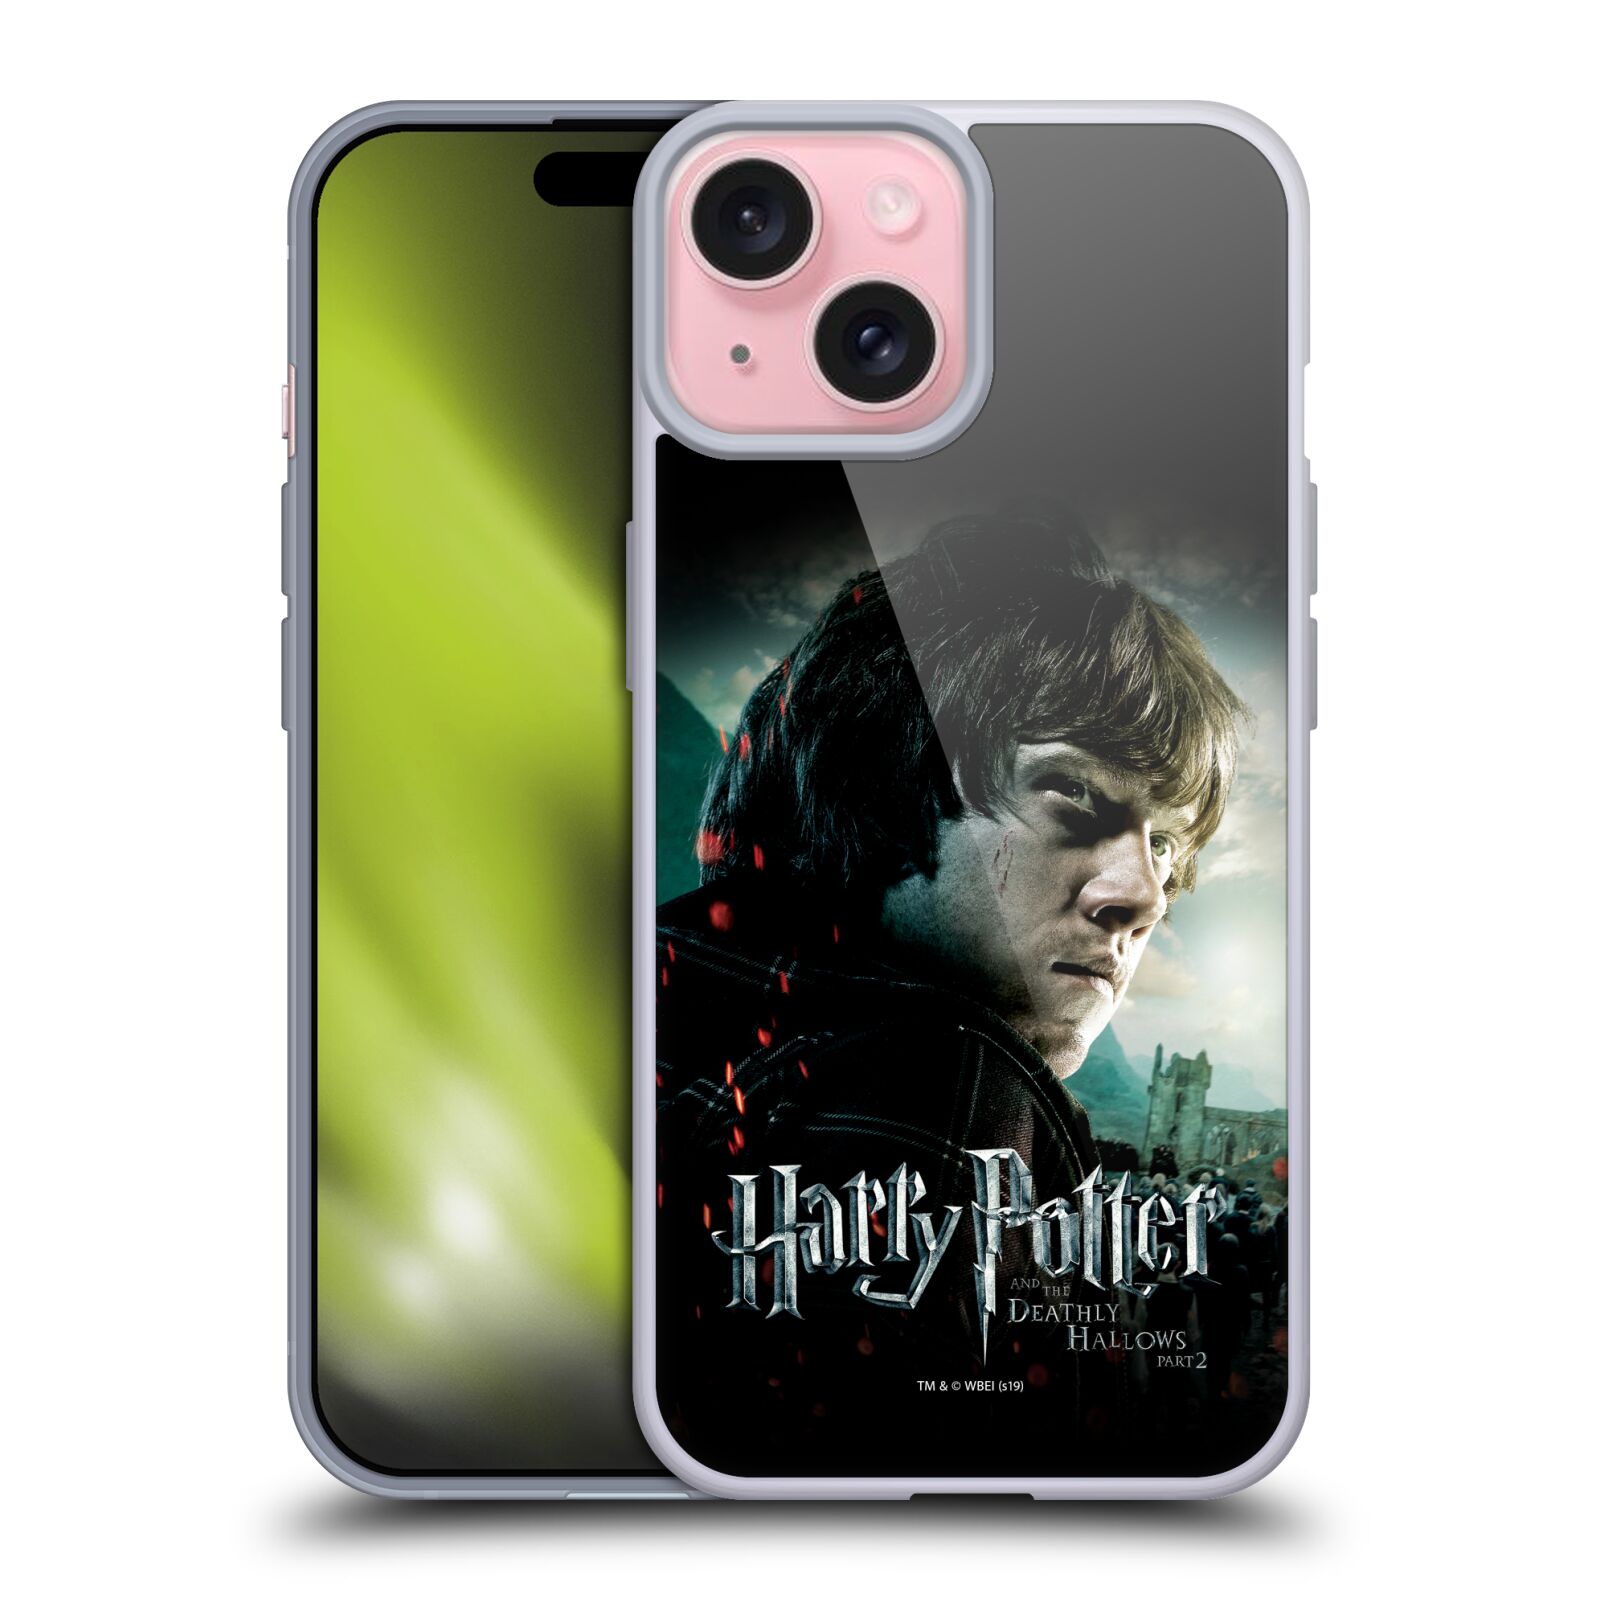 Silikonové lesklé pouzdro na mobil Apple iPhone 15 - Harry Potter a Relikvie smrti - Ron Weasley (Silikonový lesklý kryt, obal, pouzdro na mobilní telefon Apple iPhone 15 s licencovaným motivem Harry Potter a Relikvie smrti - Ron Weasley)